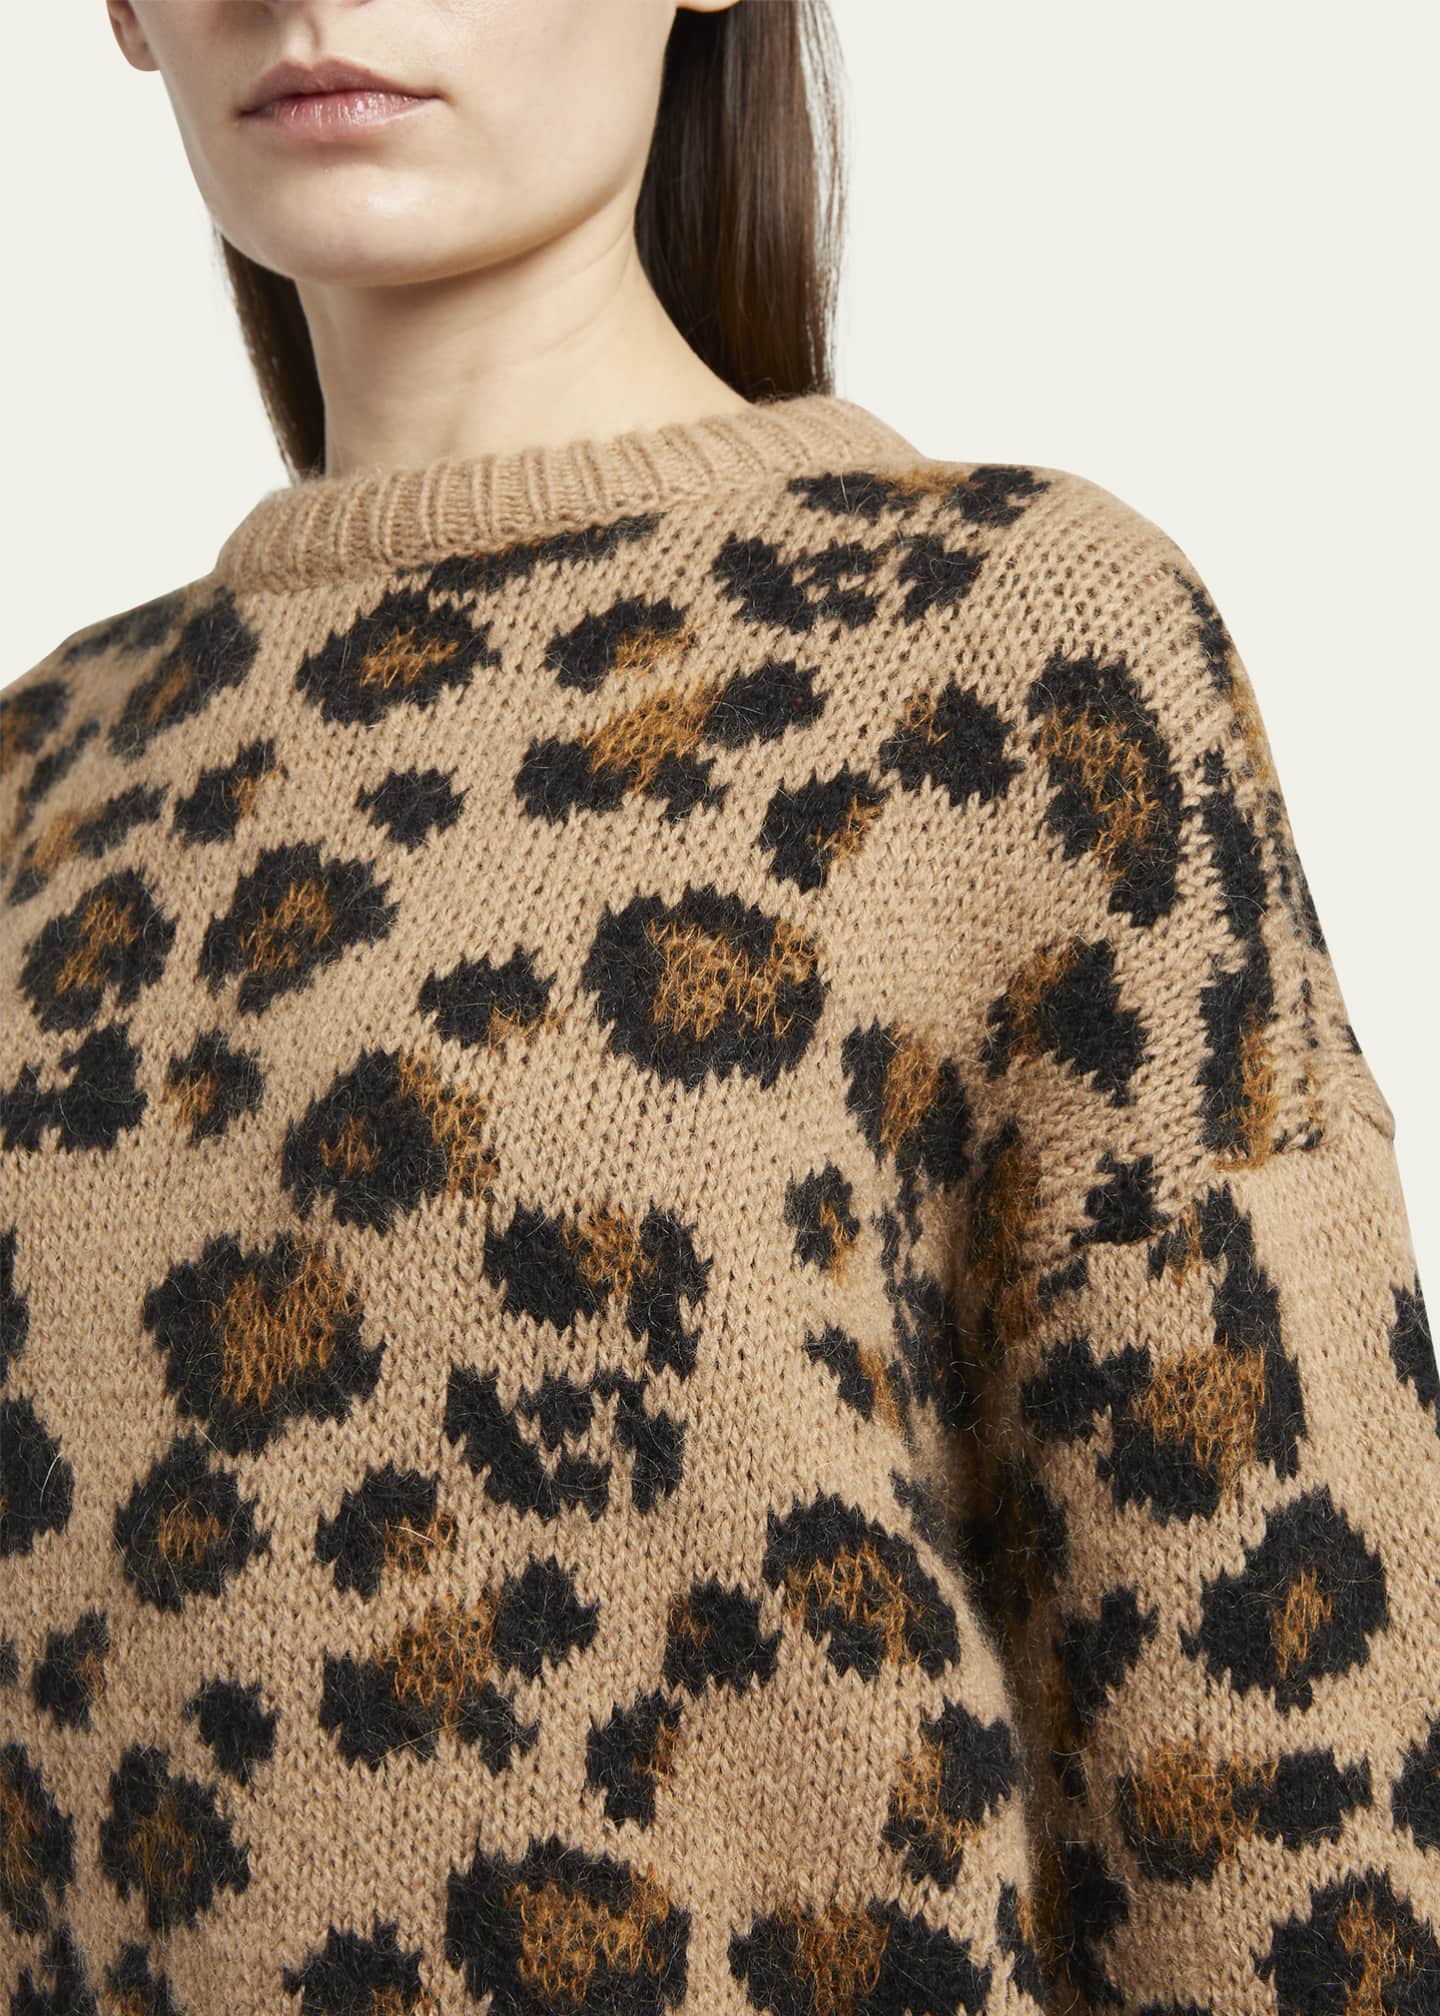 Valentino Garavani Leopard Intarsia Cropped Pullover Sweater - Bergdorf ...